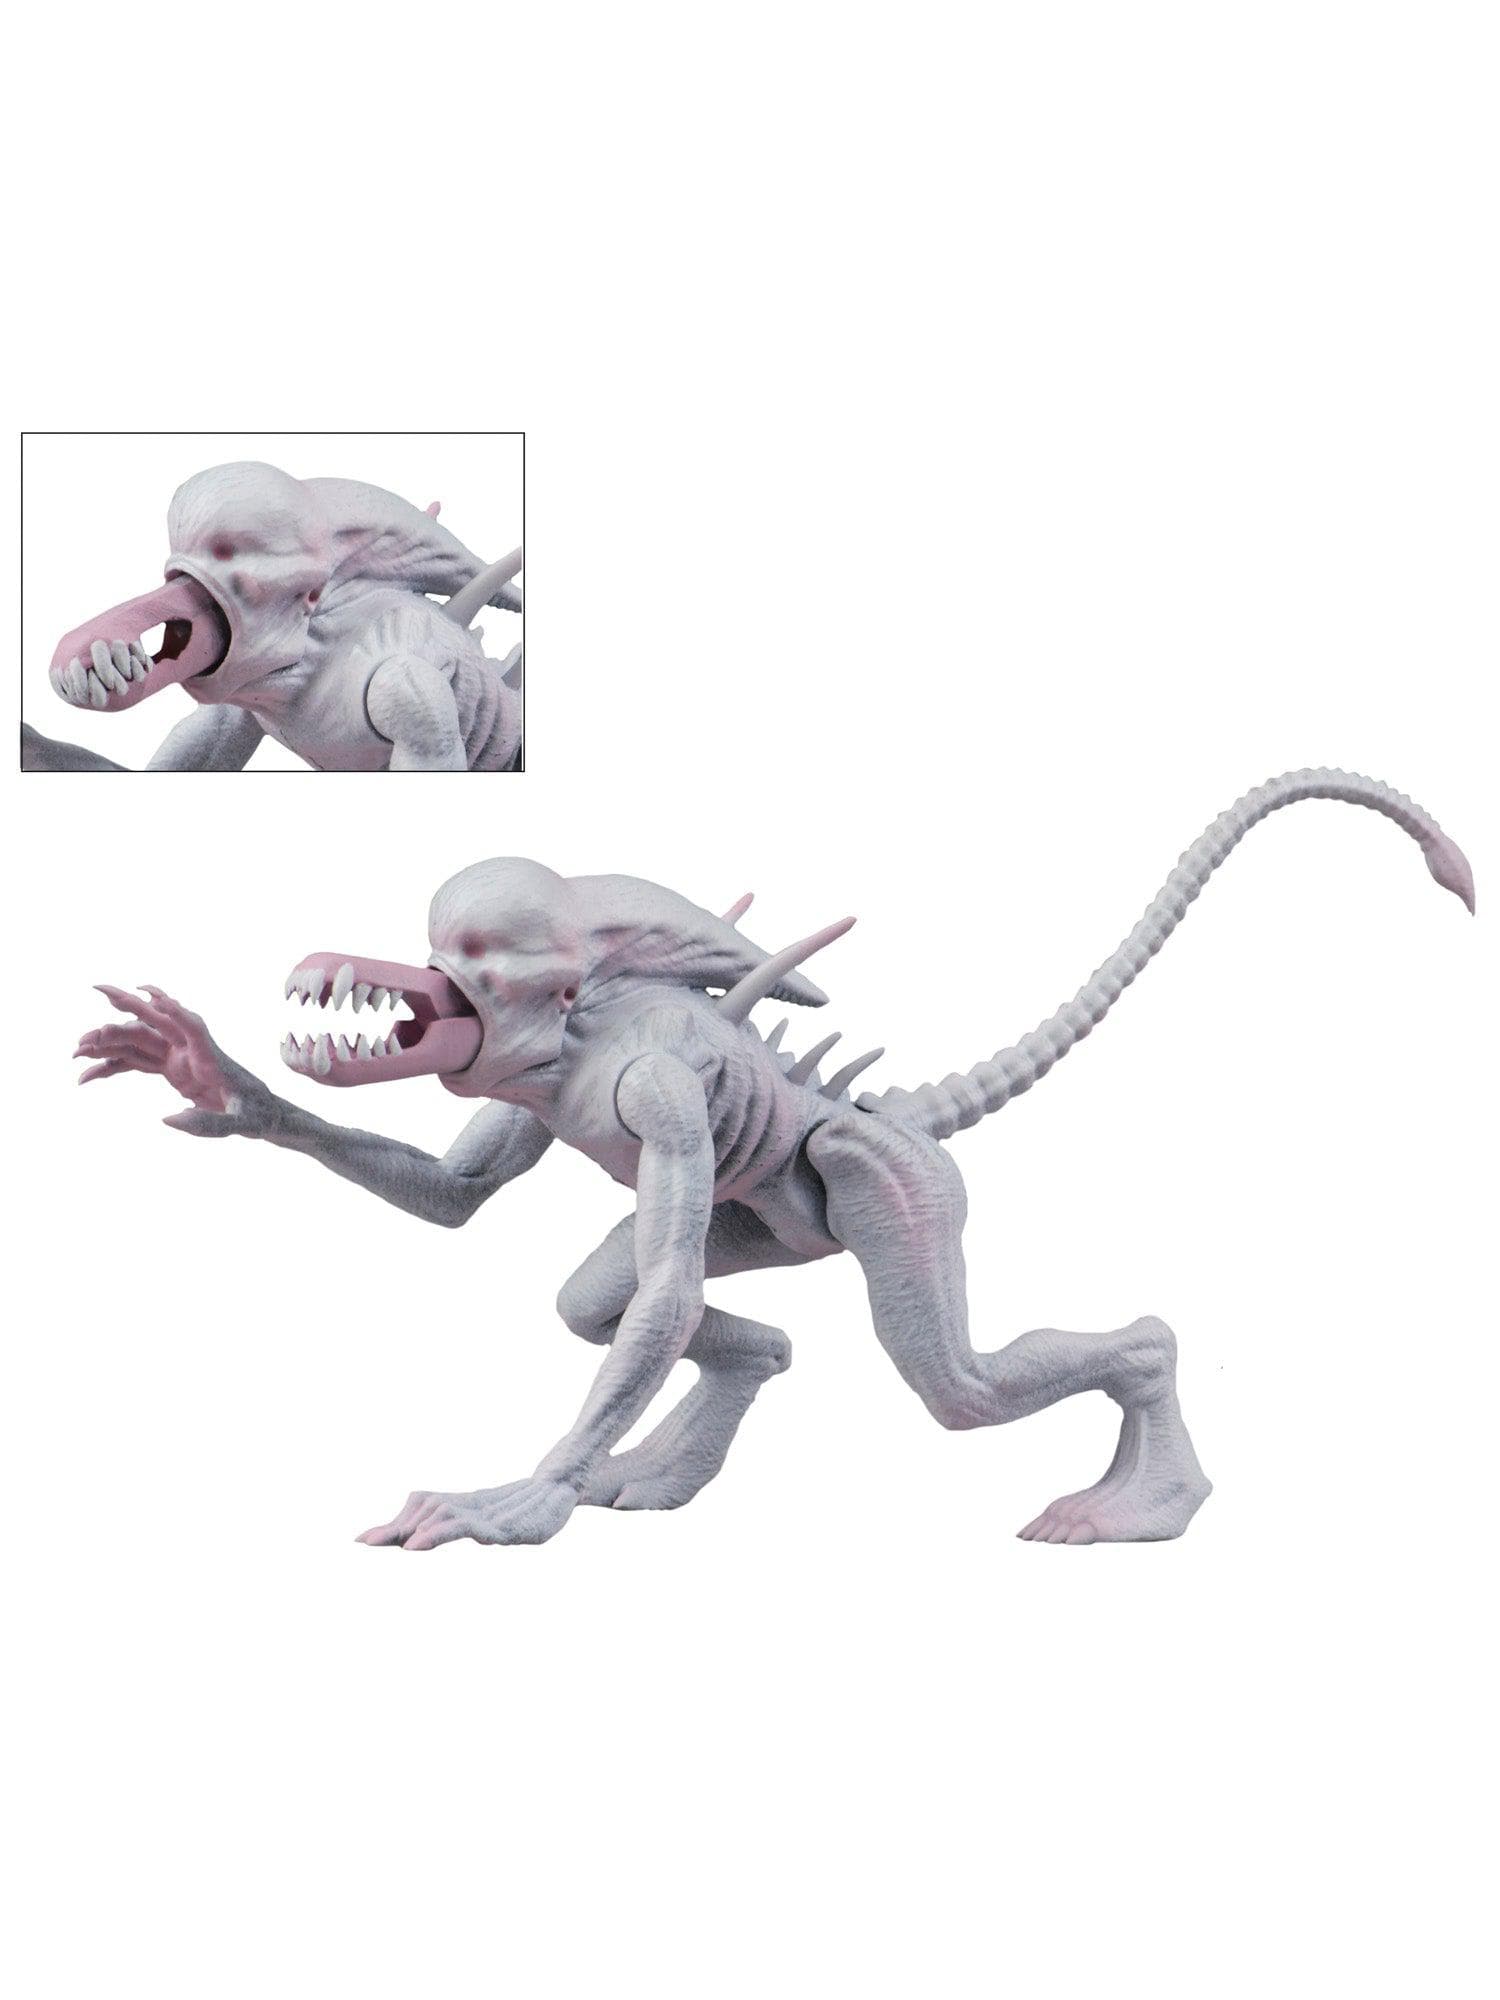 NECA - Alien & Predator Classics - 6" Figure - Neomorph Alien - costumes.com